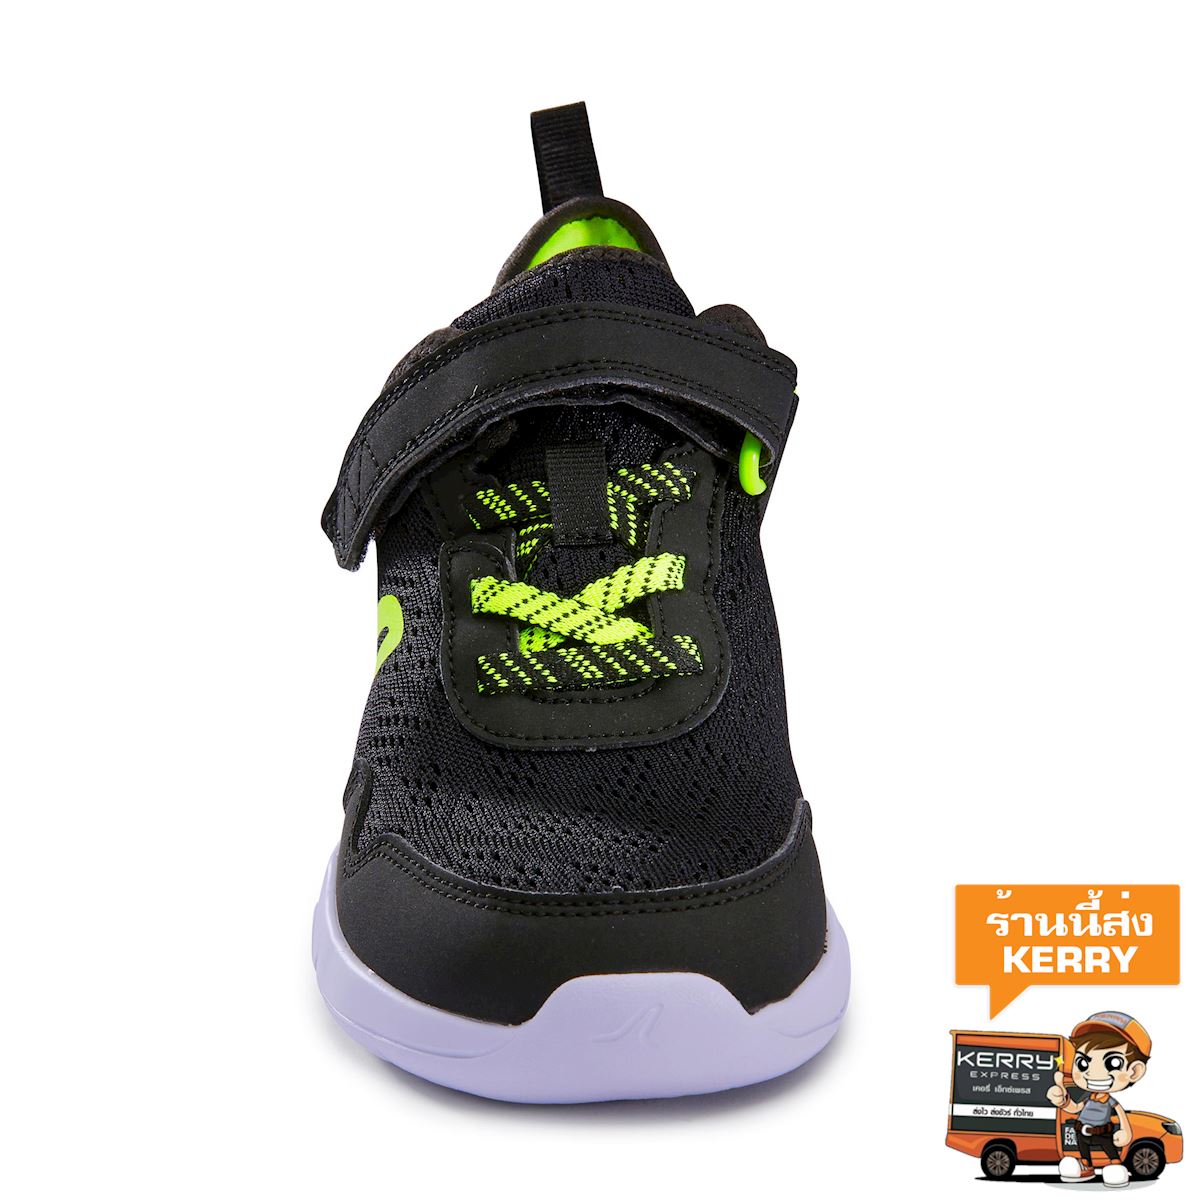 รองเท้าเด็กสำหรับใส่เดินรุ่น Actiwalk Super-Light (สีดำ/เขียว) เด็กผู้ชาย 4 ถึง 16 ปี เดินกีฬา รองเท้ากีฬา รองเท้า รองเท้าผ้าใบ